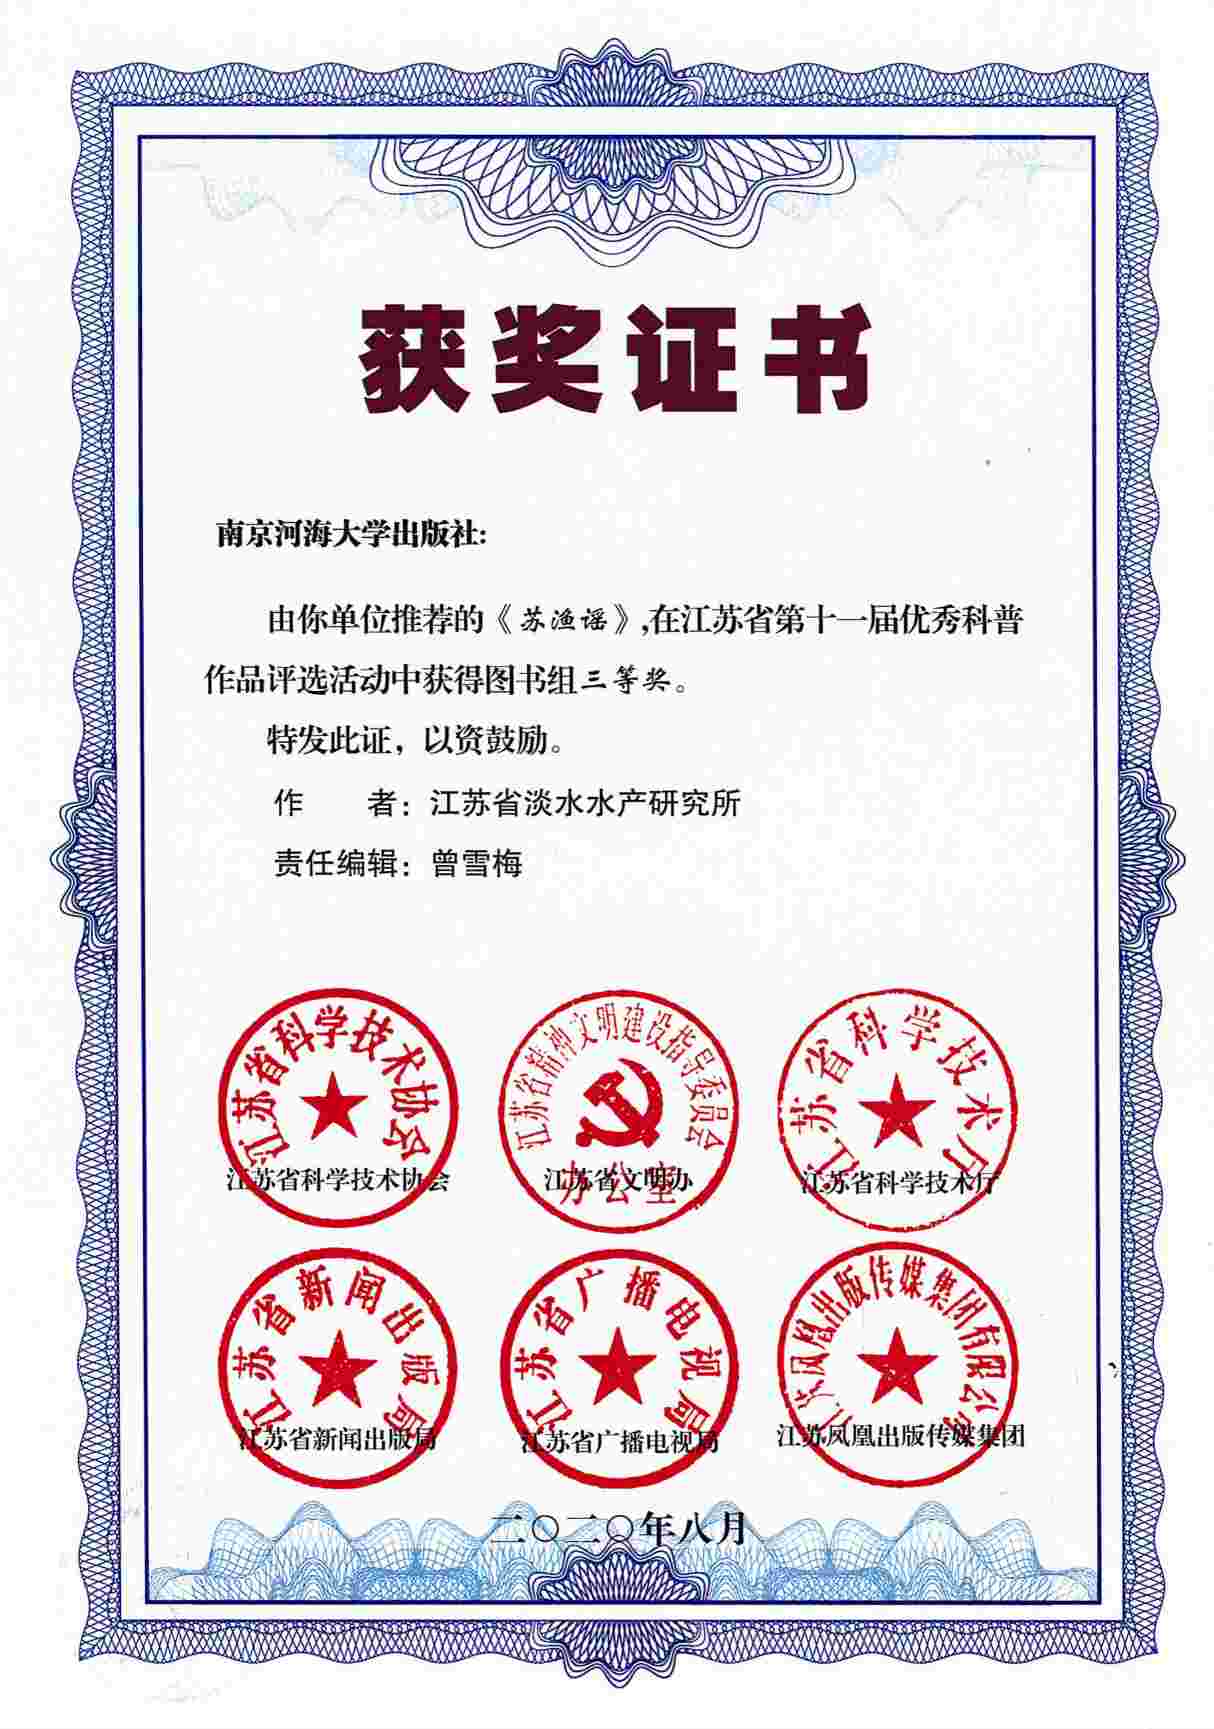 《苏渔谣》，在江苏省第十一届优秀科普作品评选活动中获得图书组三等奖。.jpg